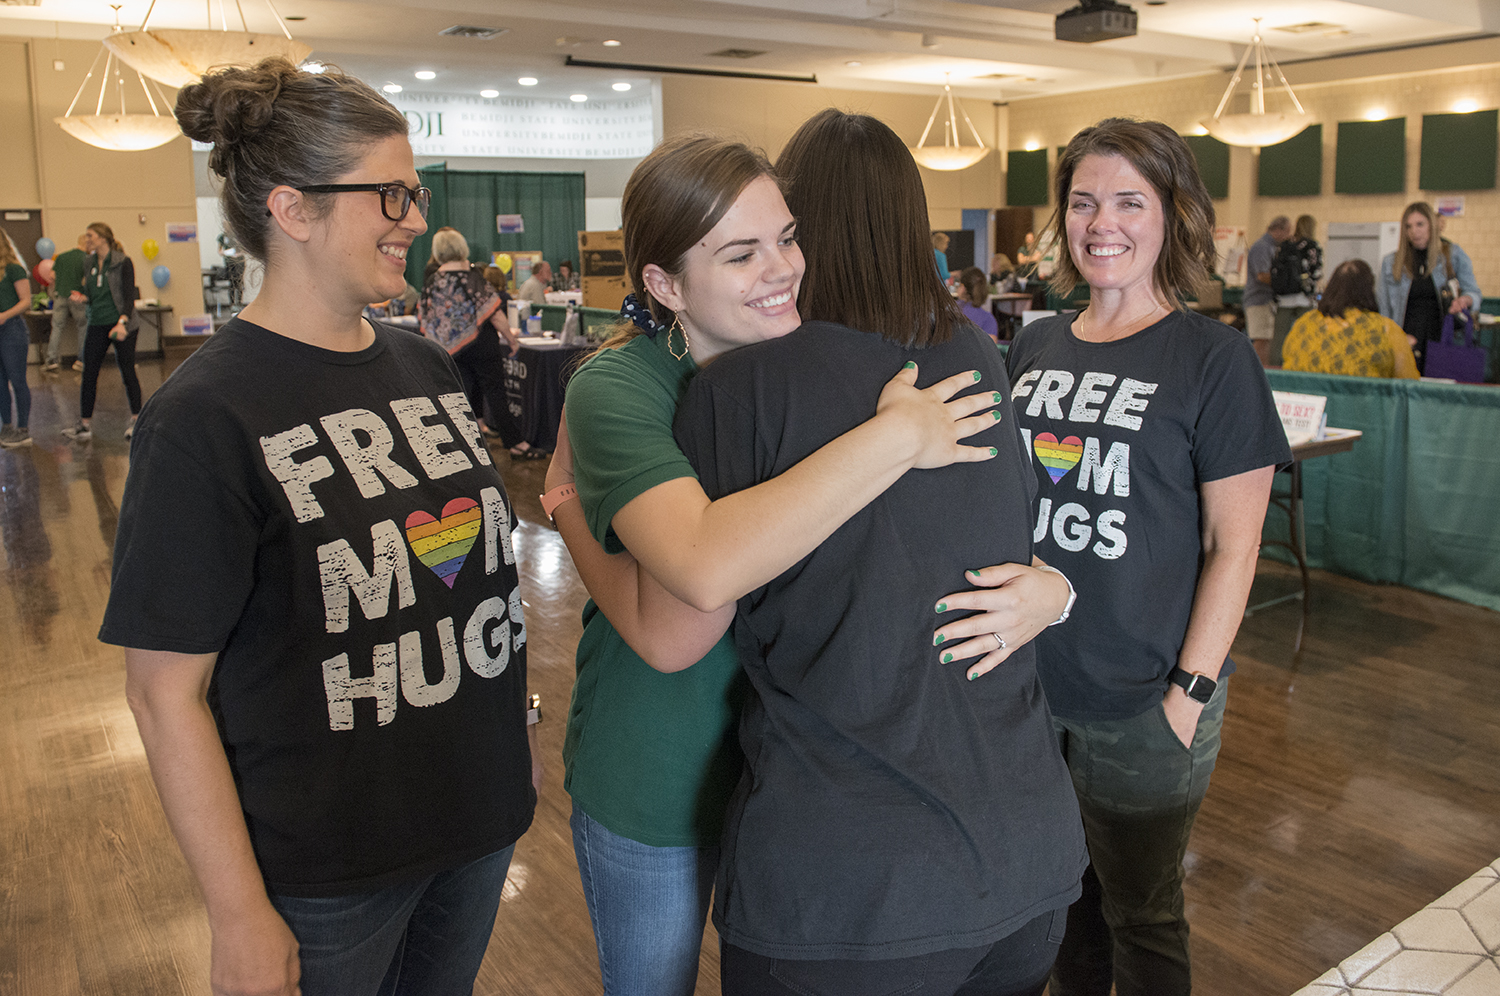 Free mom hugs during BSU’s annual All-Campus Health Fair.